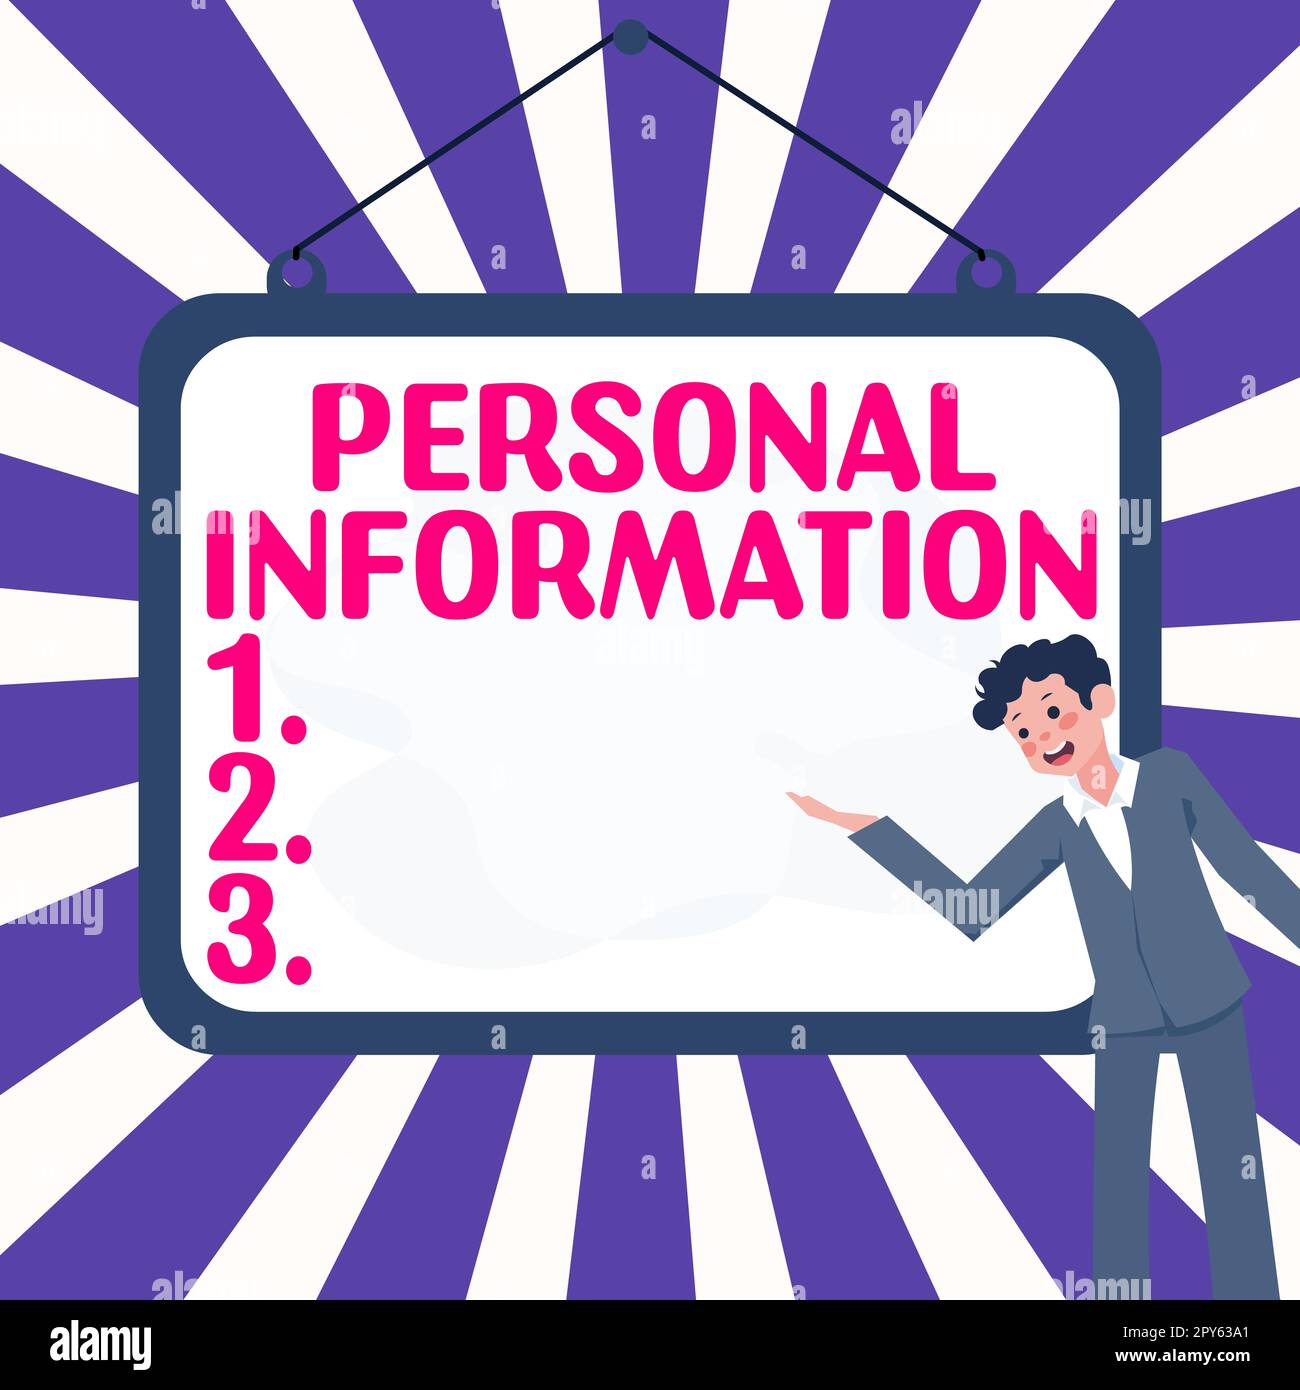 Affiche affichant les informations personnelles. L'approche commerciale a enregistré des informations sur une personne identifiable Banque D'Images